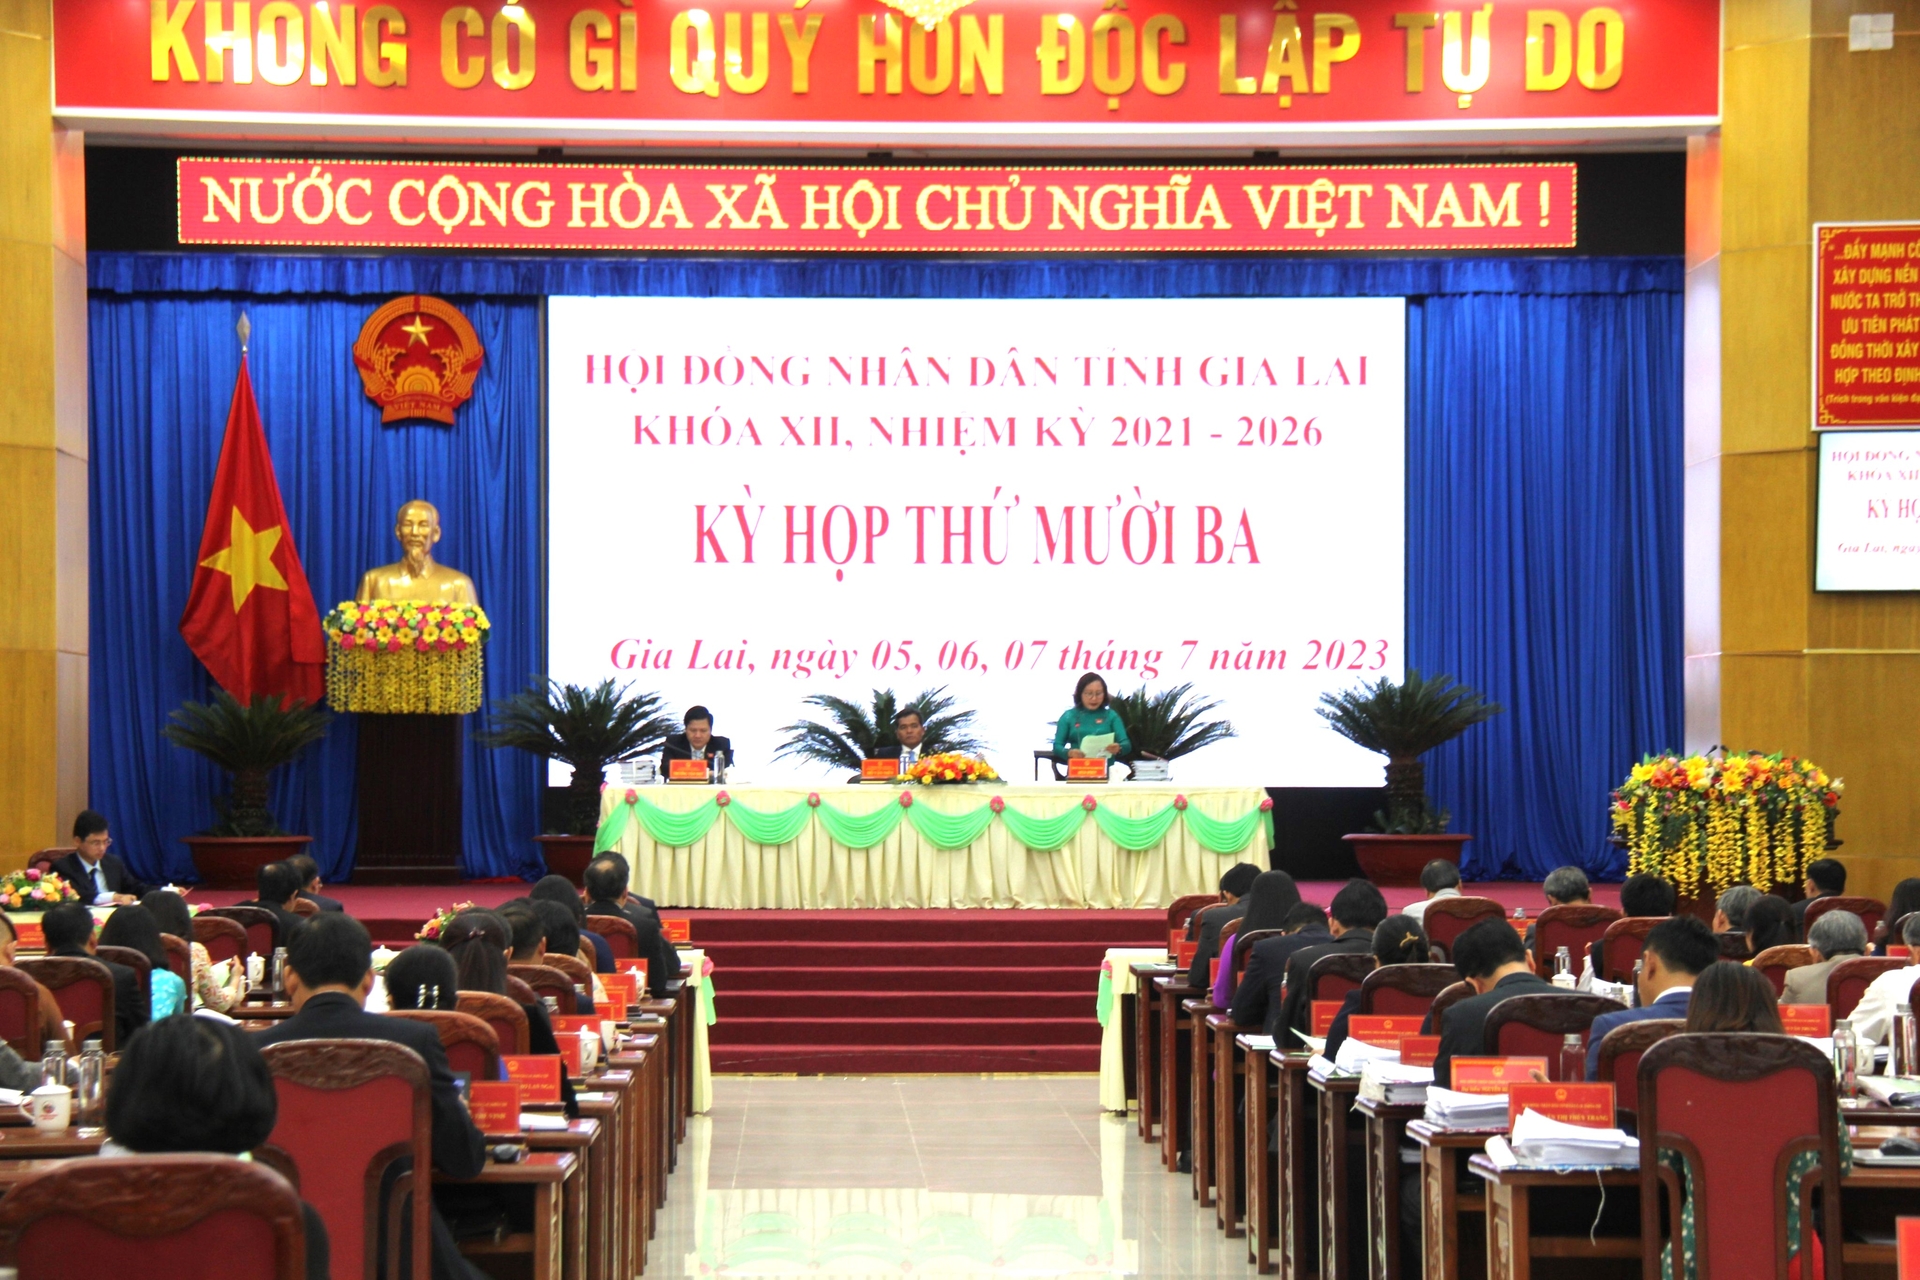 Khai mạc kỳ họp thứ 13 HĐND tỉnh Gia Lai khóa XII, nhiệm kỳ 2021 - 2026. Ảnh: Đăng Lâm.